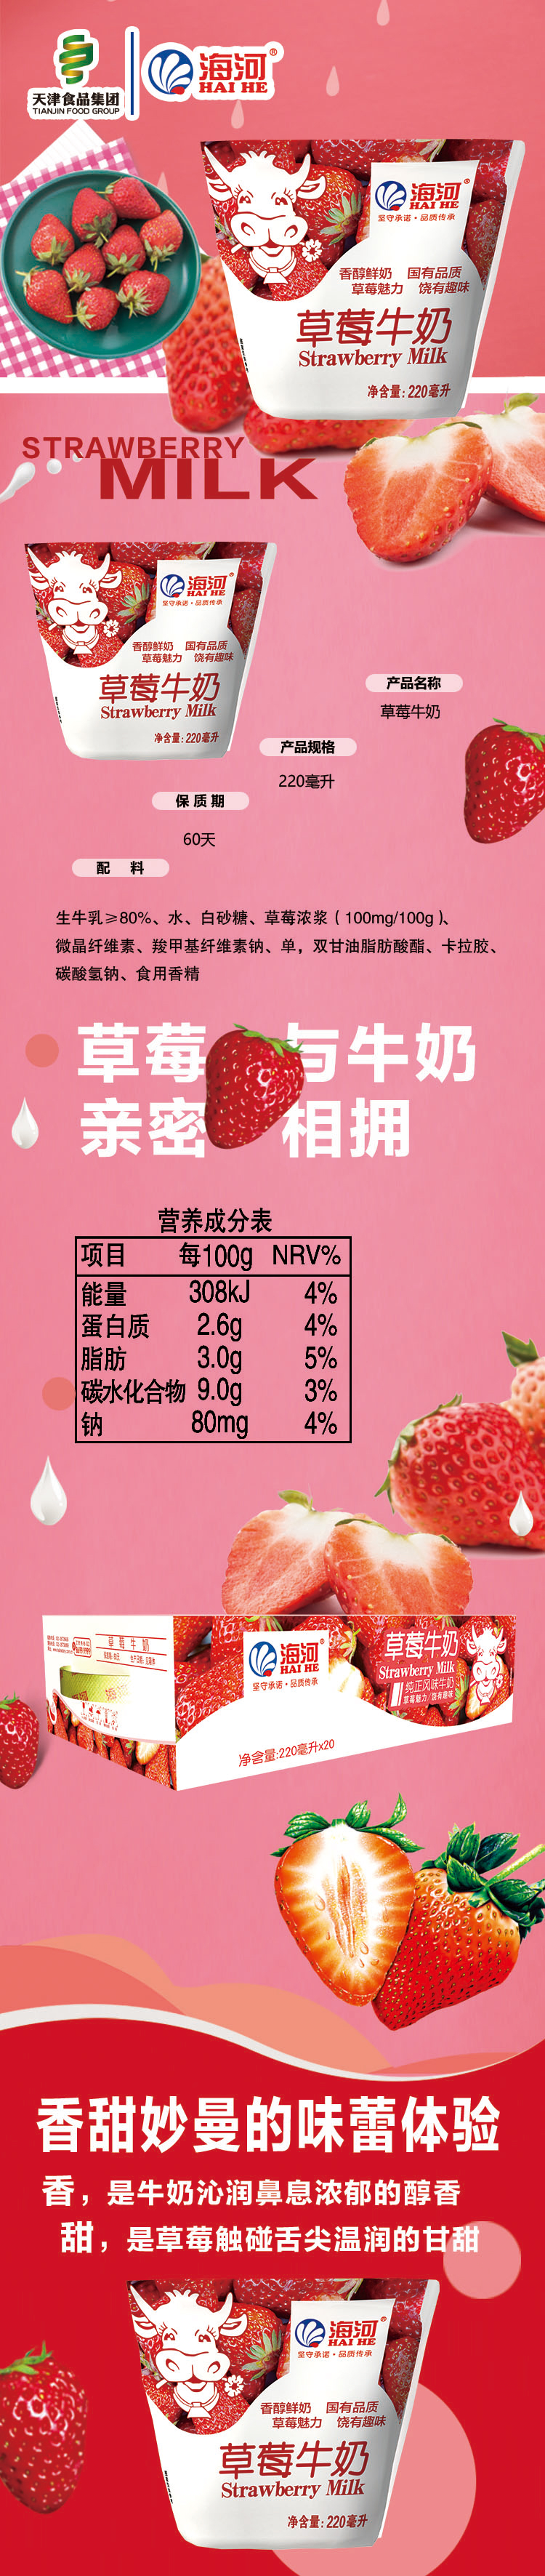 草莓详情图x.jpg